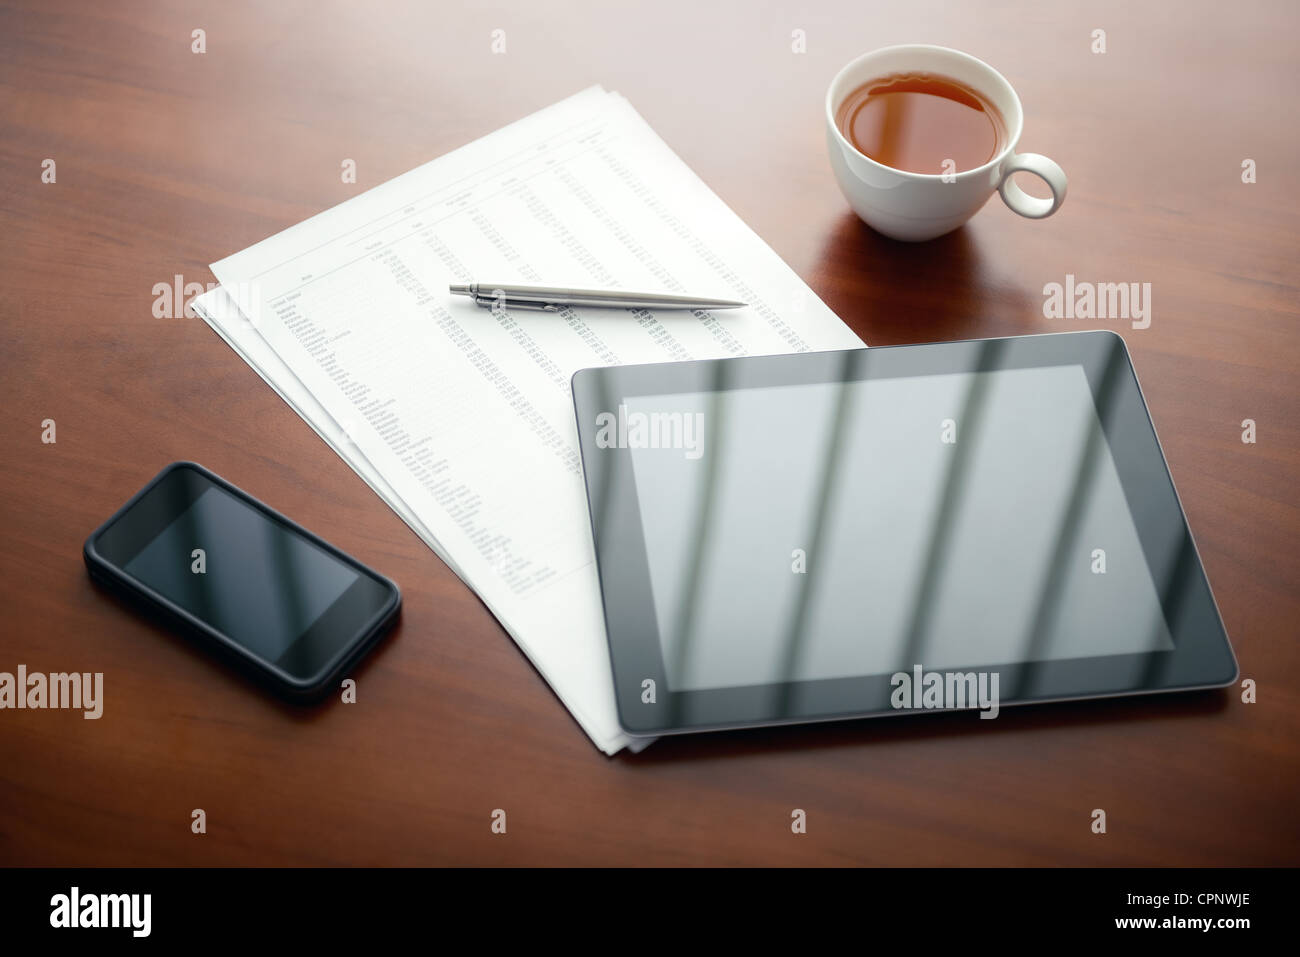 Ambiente di lavoro moderno con tavoletta digitale e il telefono cellulare, penne e le carte con i numeri. Foto Stock